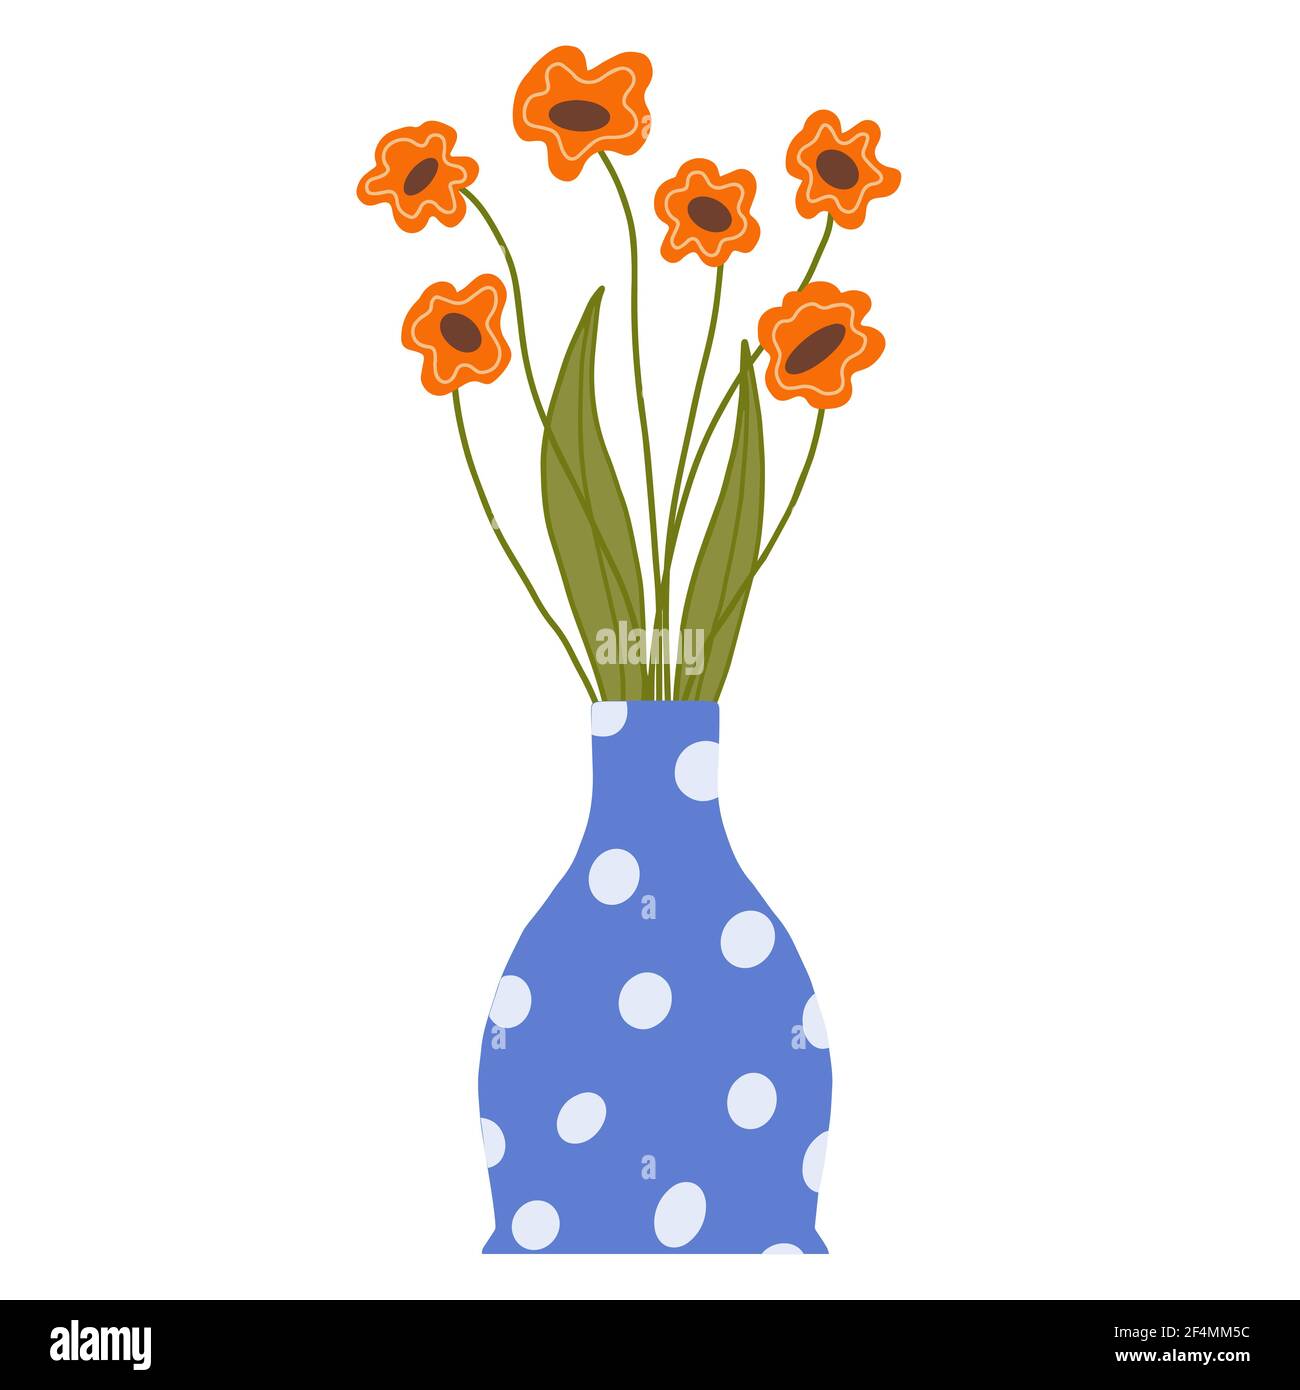 Bouquet von Feld orange Mohnblumen in einer blauen Vase. Schöne blühende Komposition mit Blättern und Stiel isoliert auf weiß. Stock Vektor